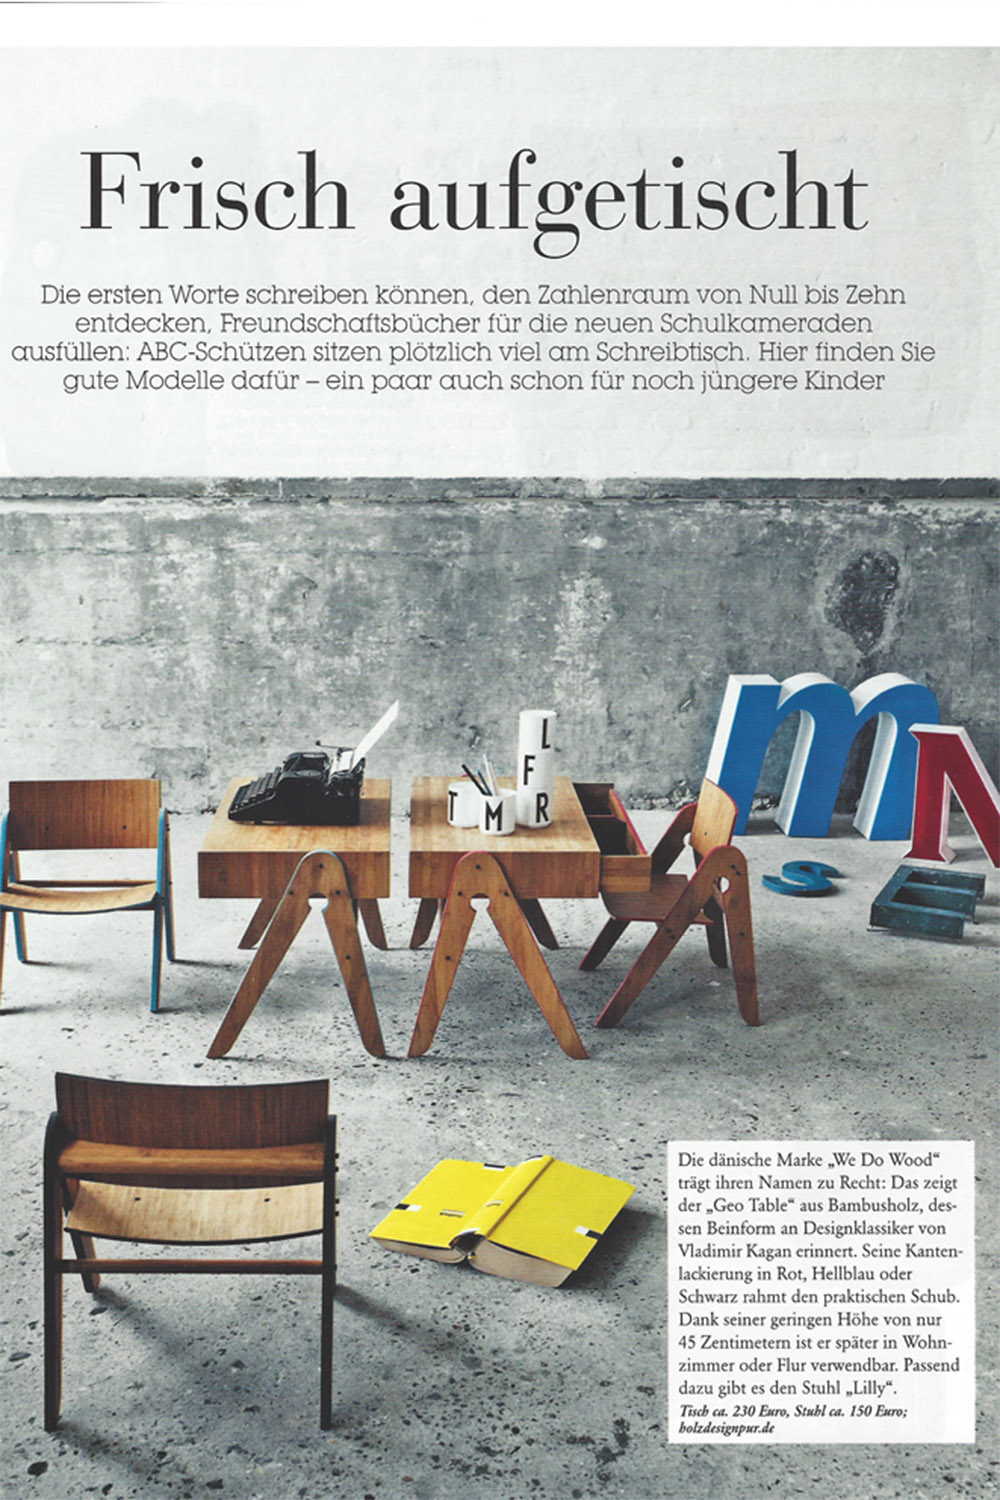 Titelbild vom Luna Magazin mit Möbeln als Titelbild und mit schwarzer Aufschrift Frisch aufgetischt